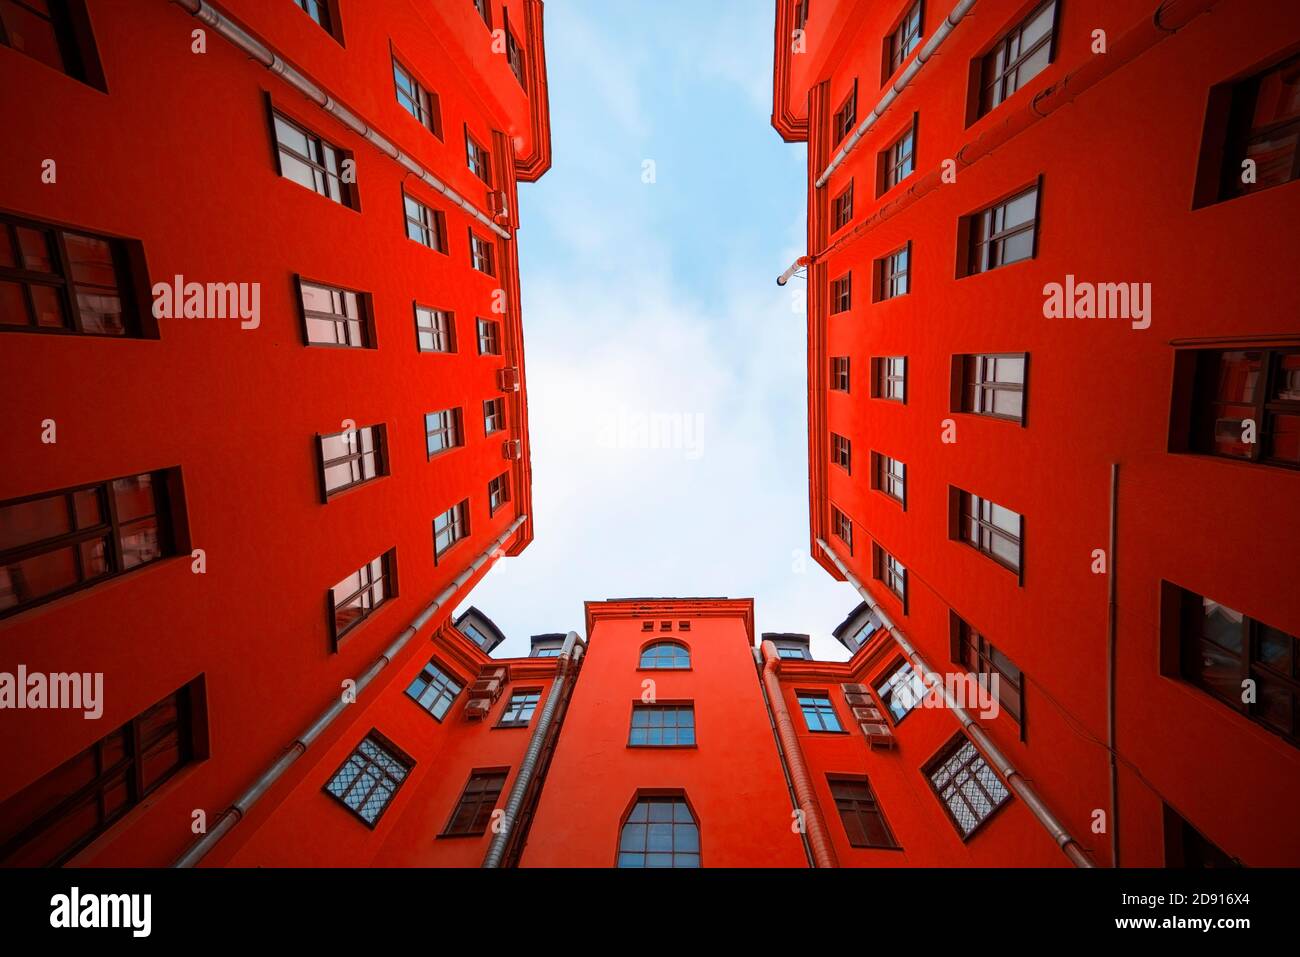 Casa roja con apartamentos residenciales, edificio con fachada roja, foto de creatividad Foto de stock